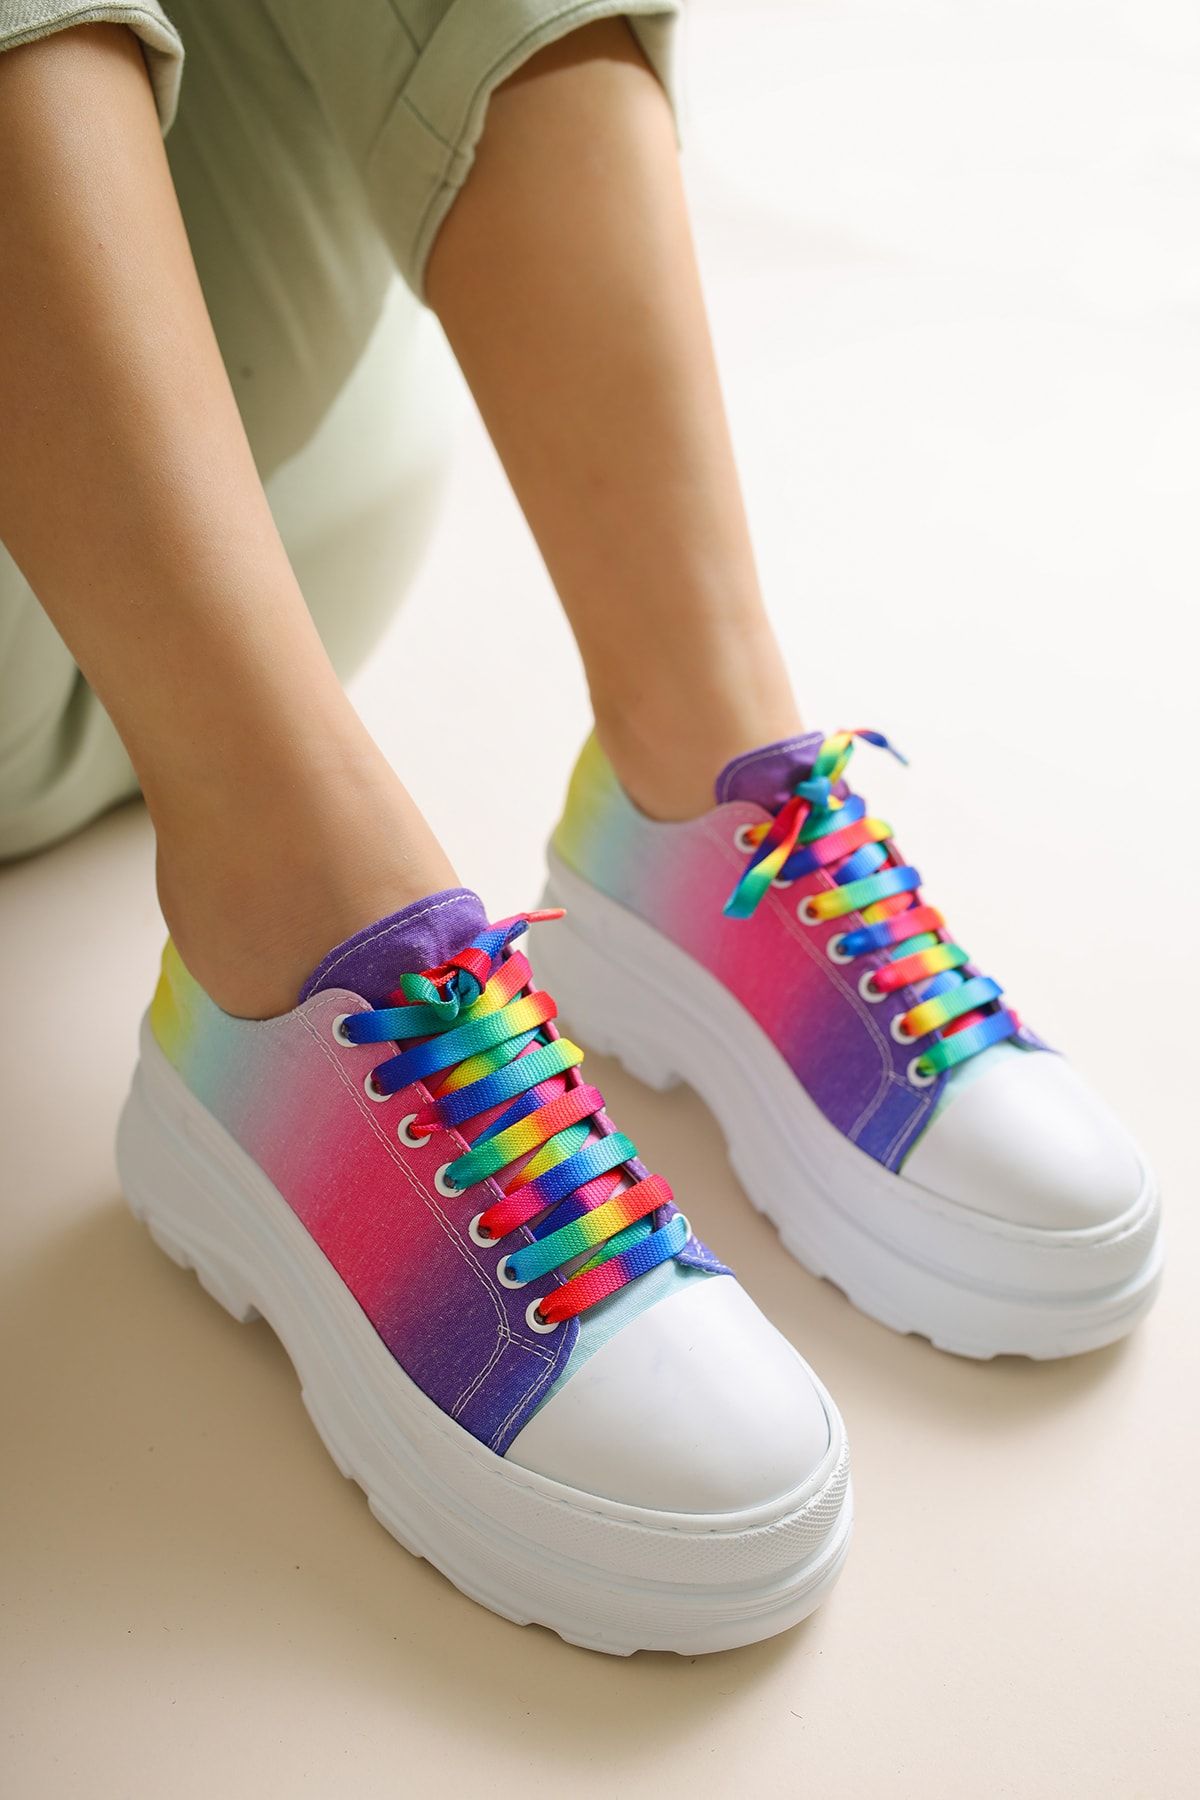 Limoya Alyce Çok Renkli Keten Kumaş Bağcıklı Sneakers Spor Ayakkabı